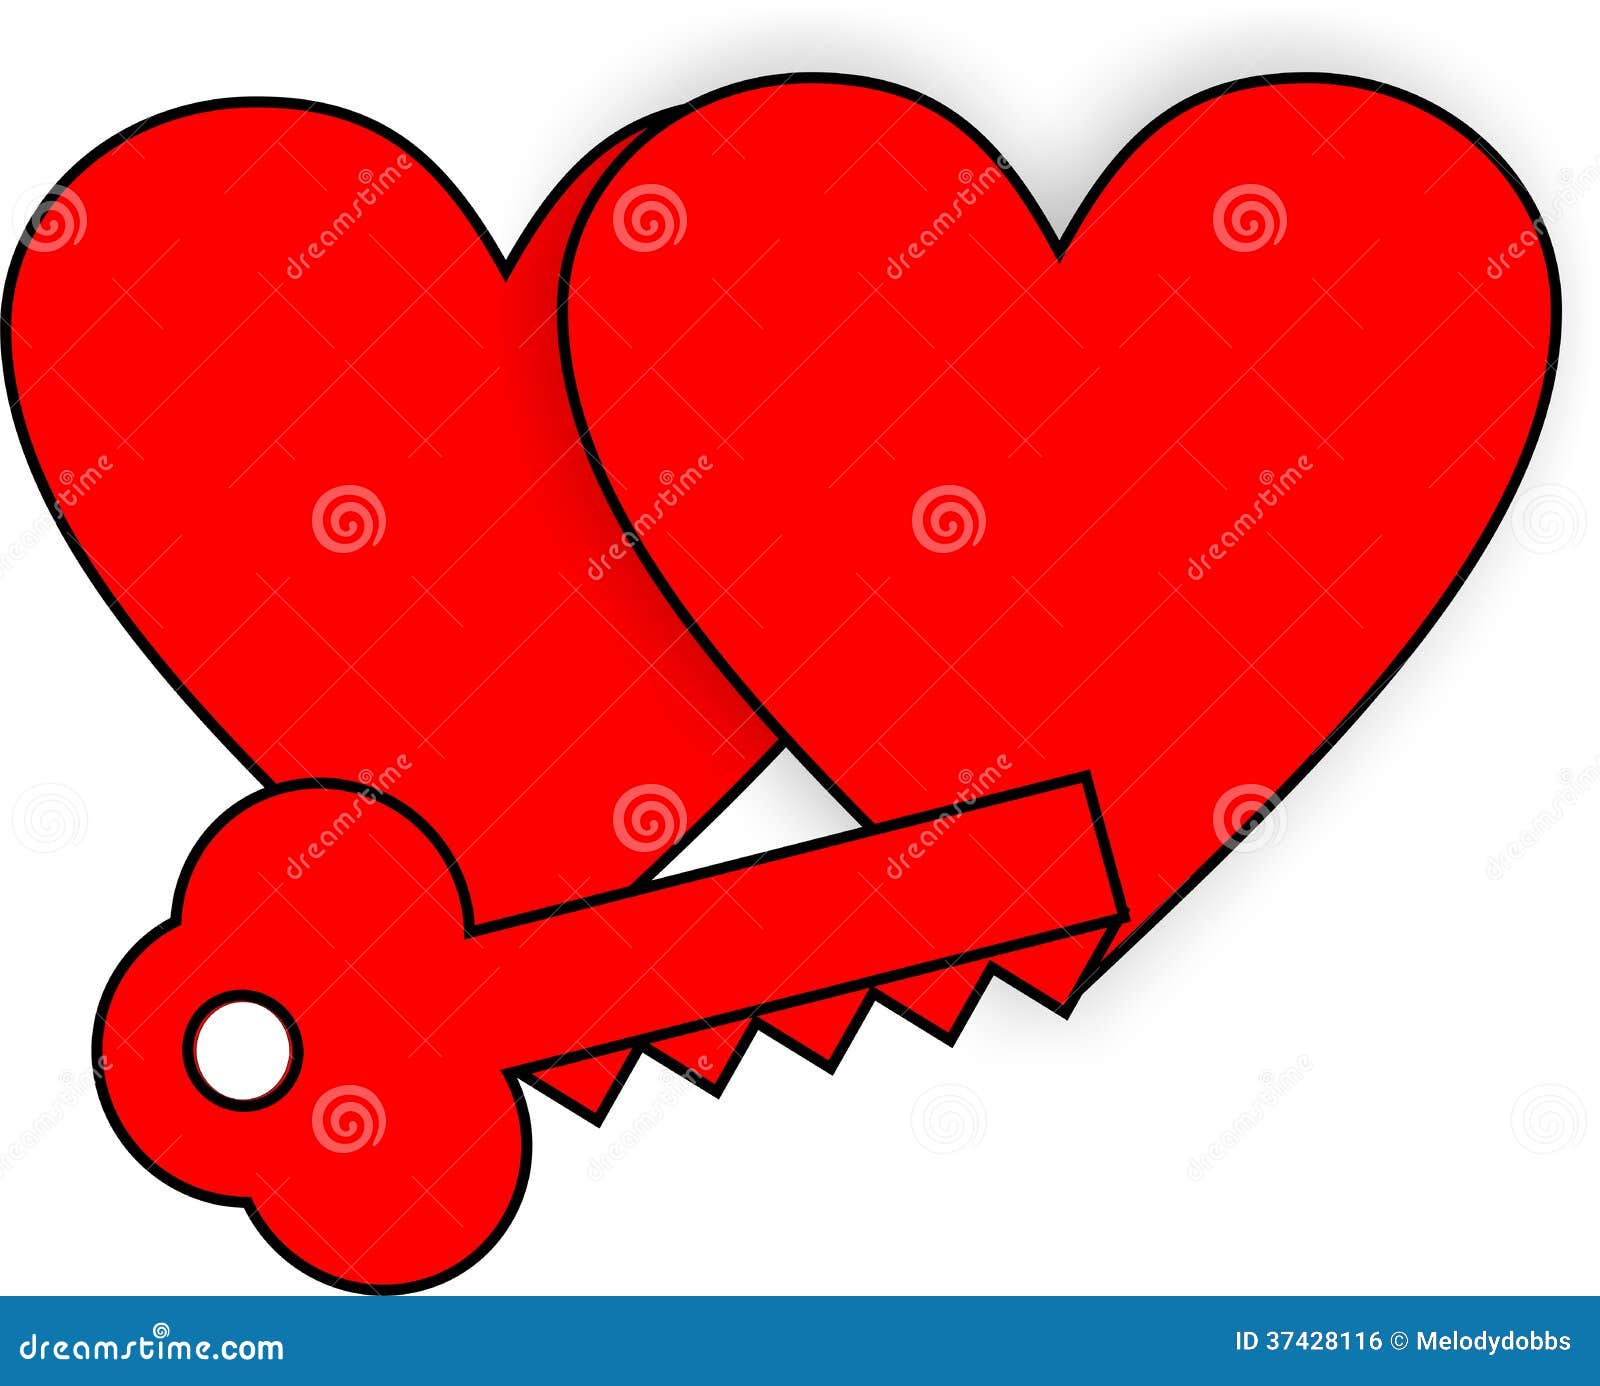 free heart key clipart - photo #23